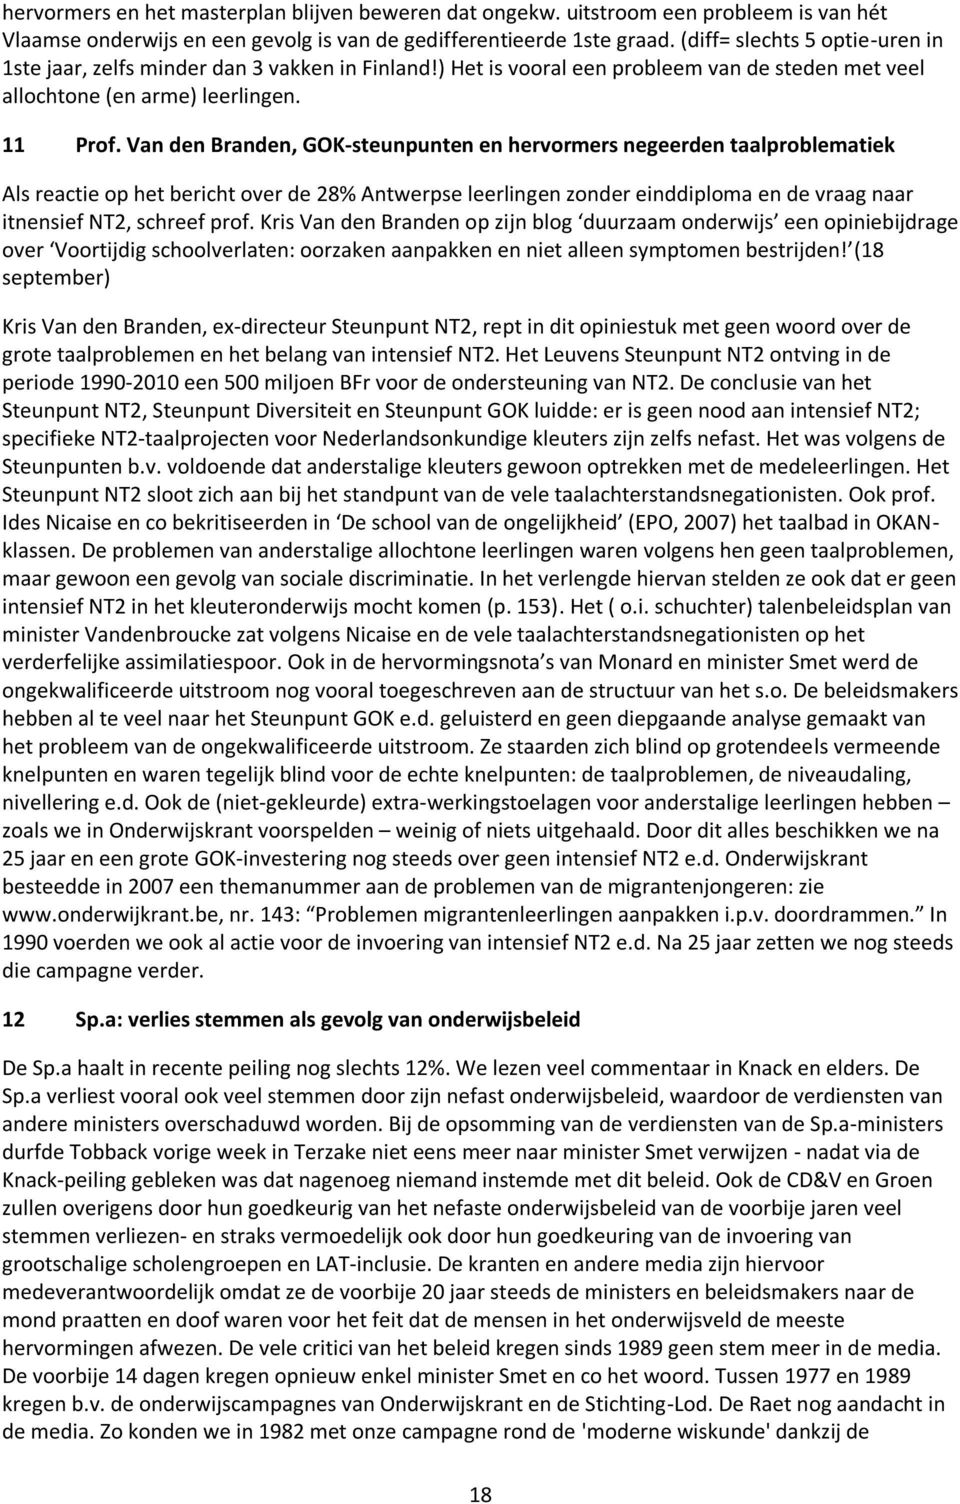 Van den Branden, GOK-steunpunten en hervormers negeerden taalproblematiek Als reactie op het bericht over de 28% Antwerpse leerlingen zonder einddiploma en de vraag naar itnensief NT2, schreef prof.